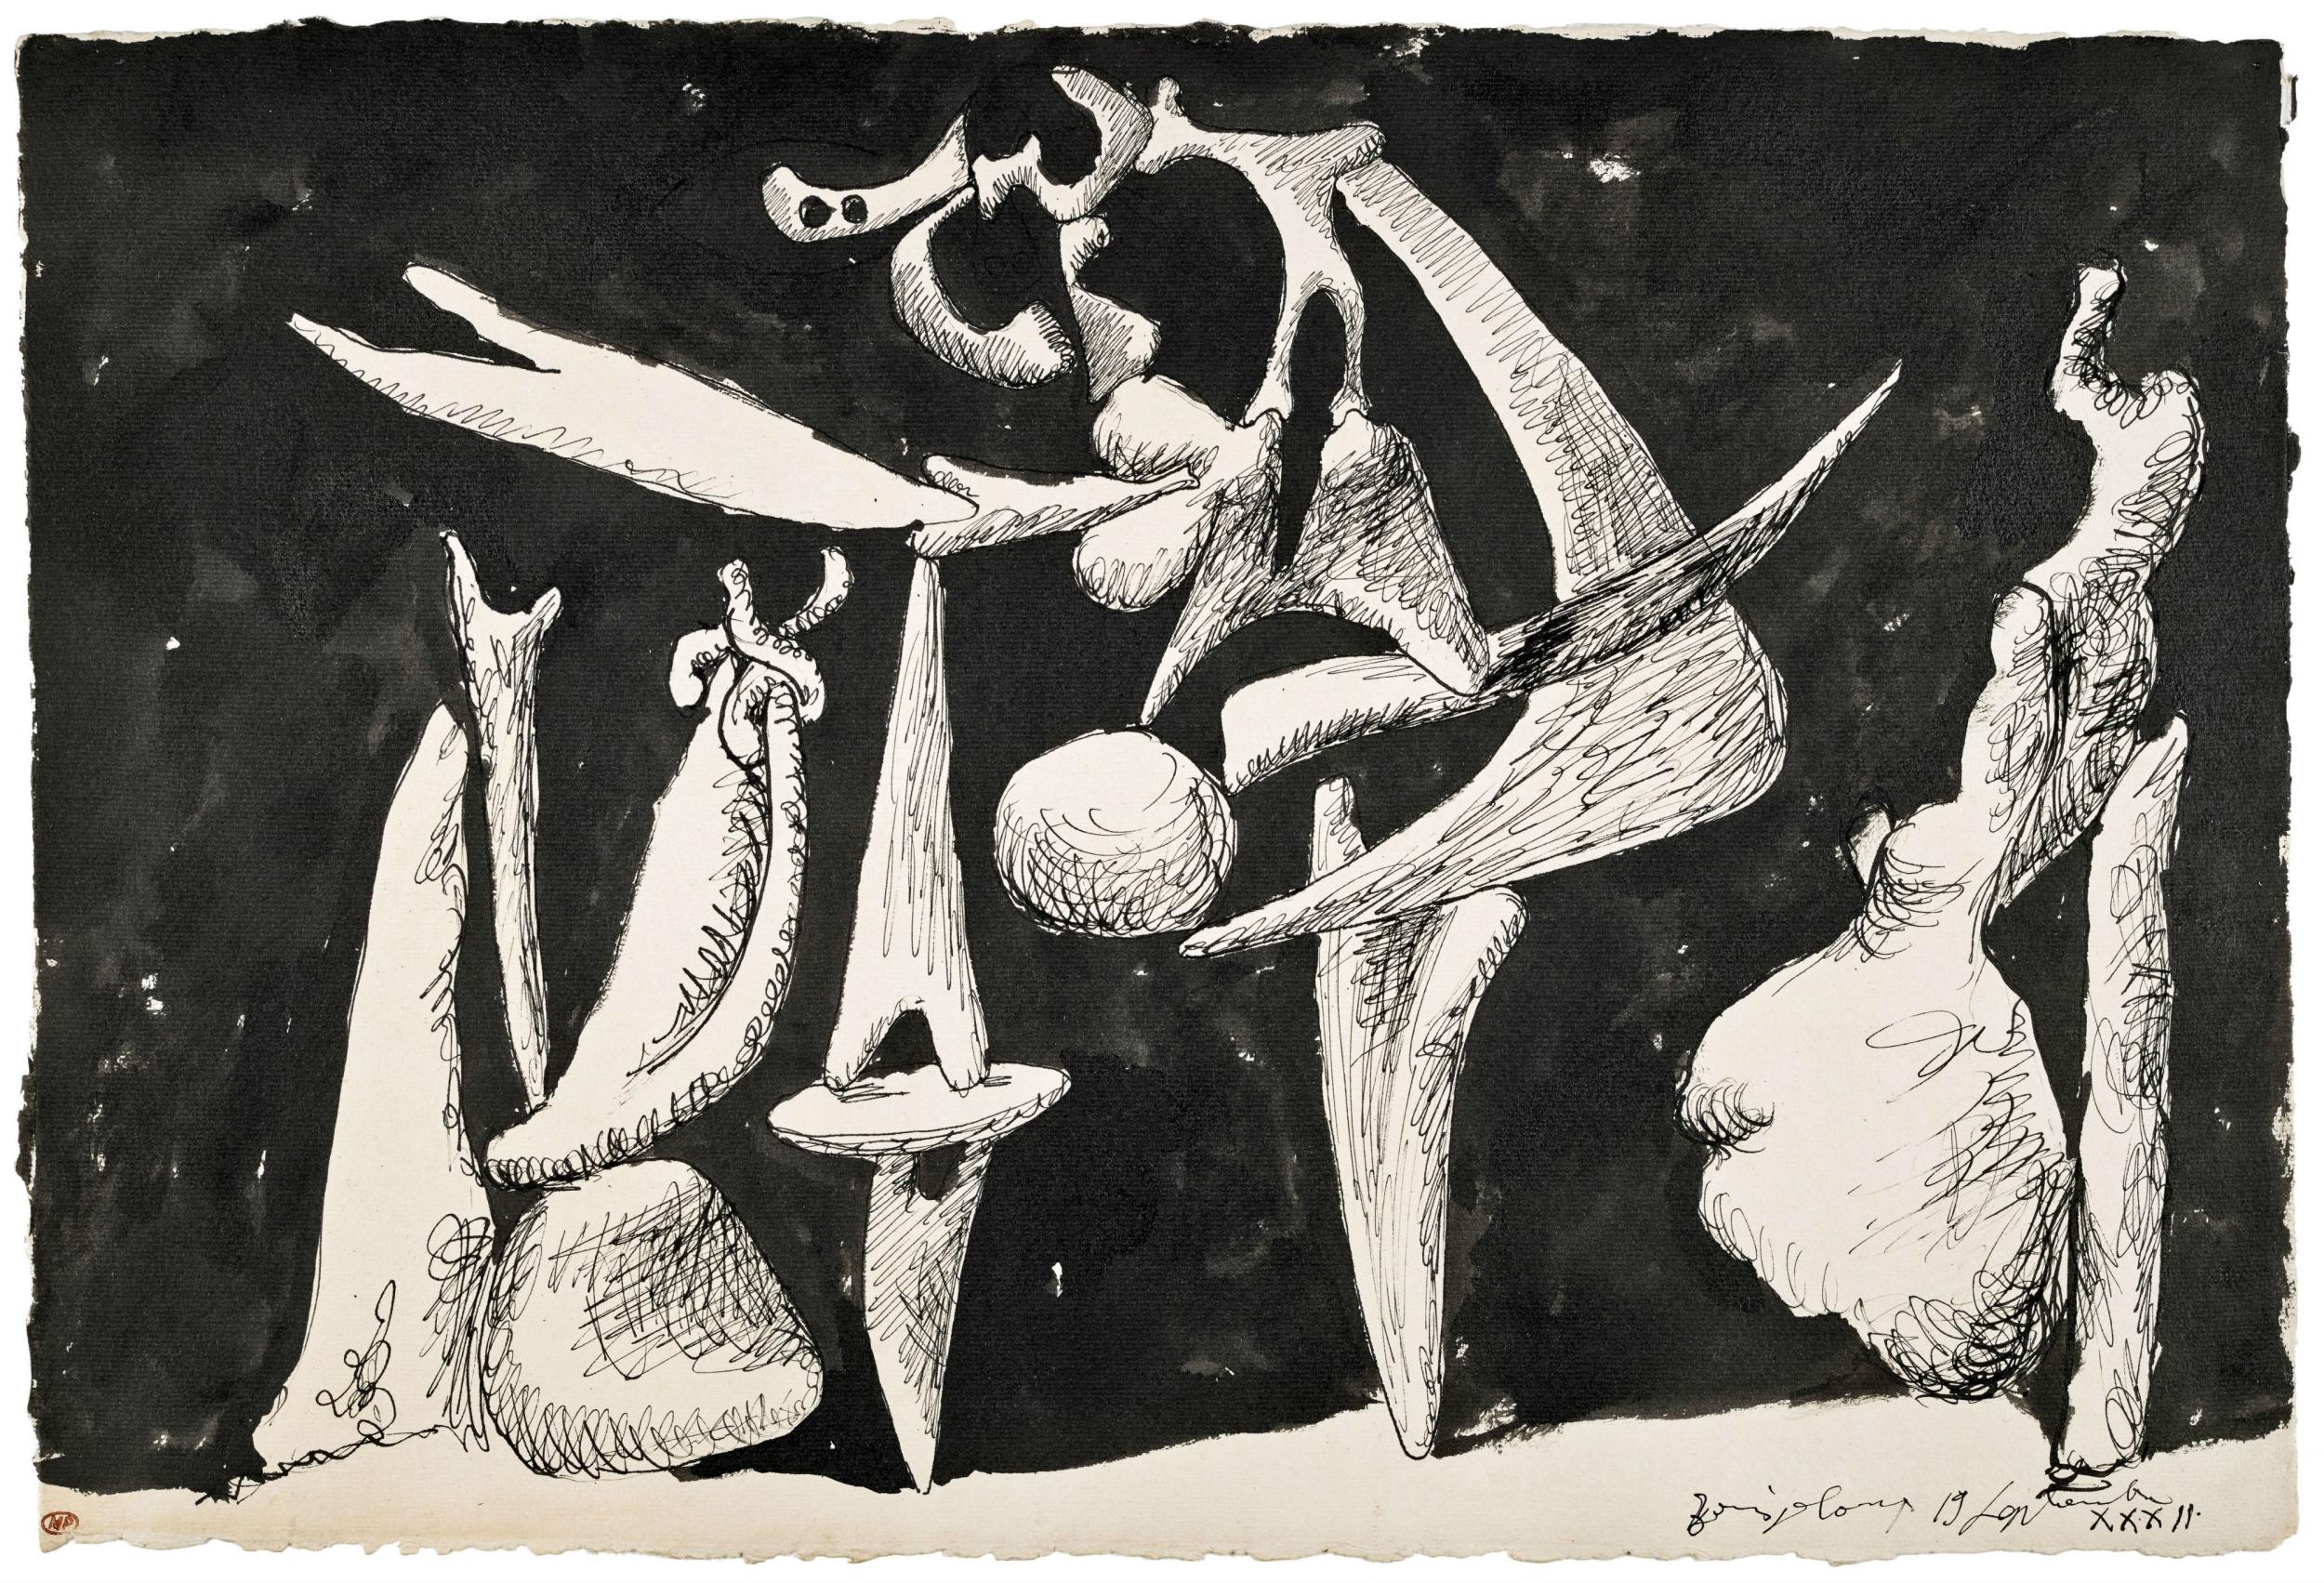 Pablo Picasso ‘The Crucifixion’ (La Crucifixion), 1932, Musée National Picasso (Succession Picasso/DACS)